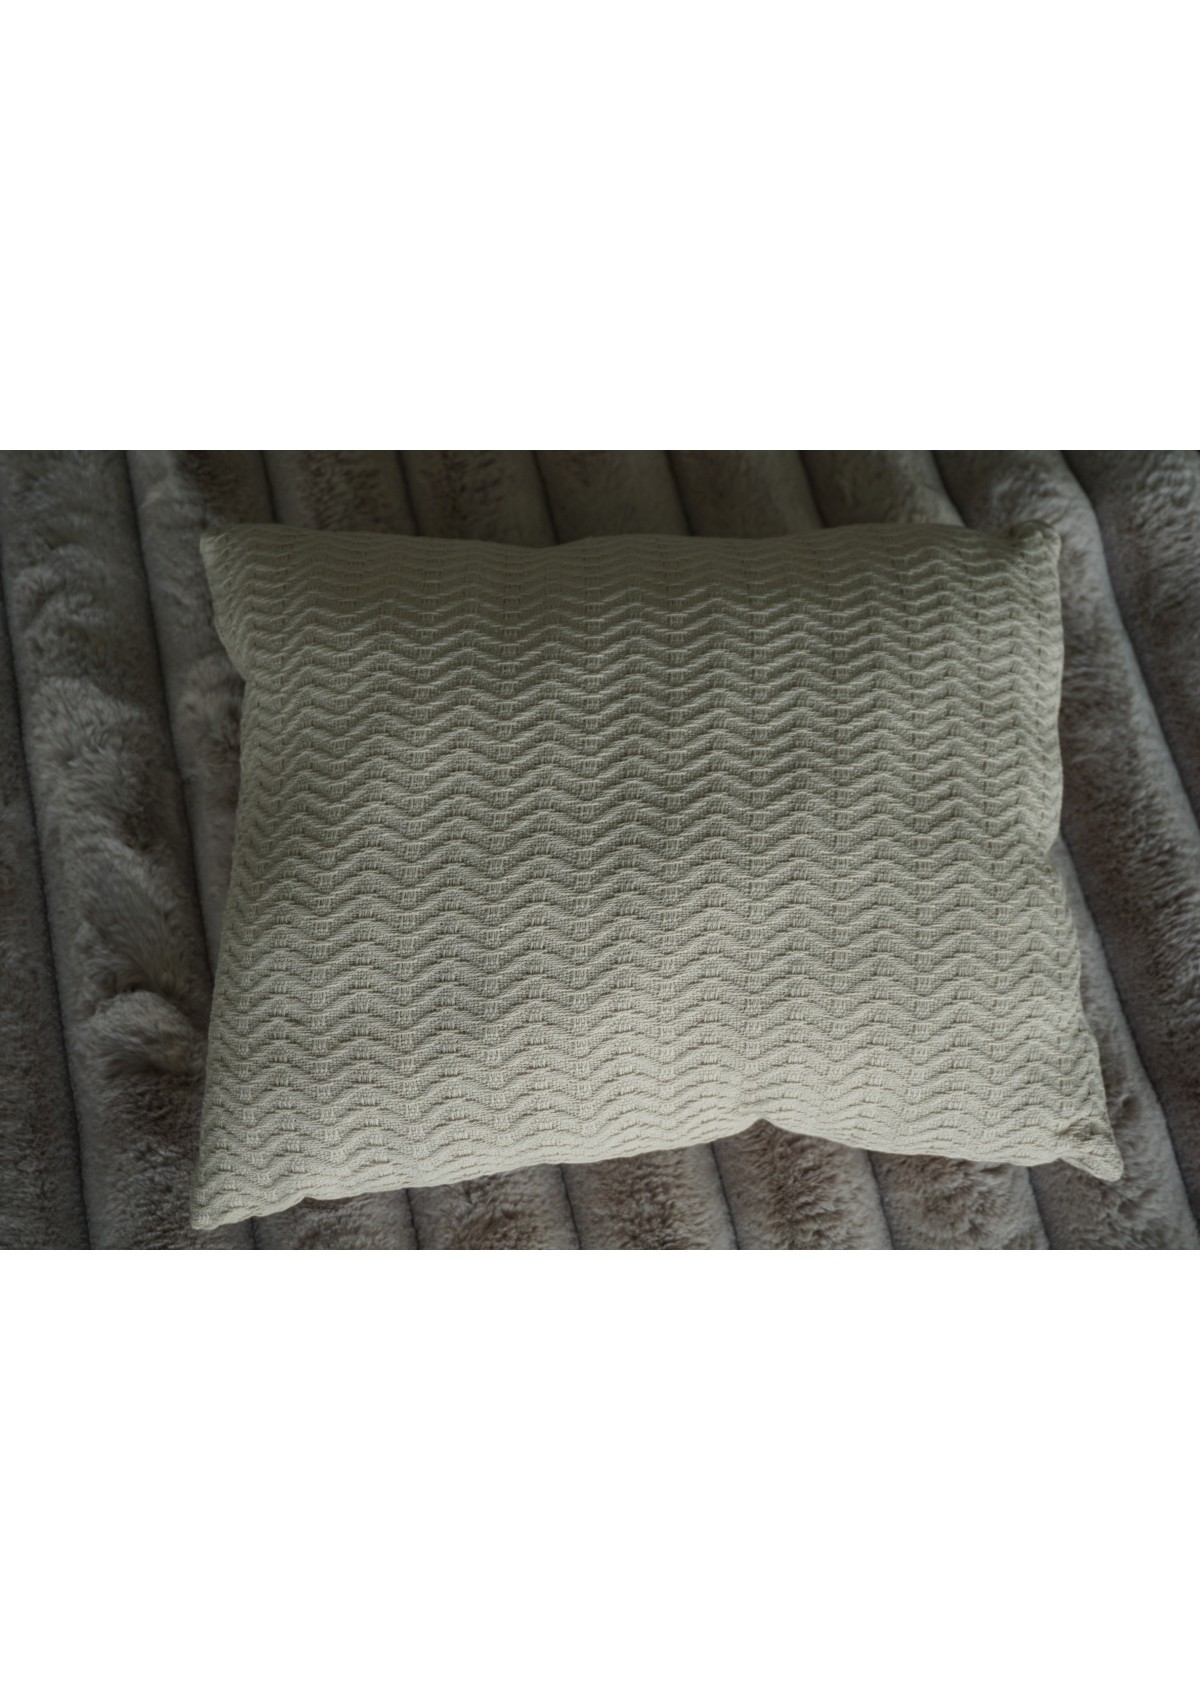 Pillow 18x18 ECRU